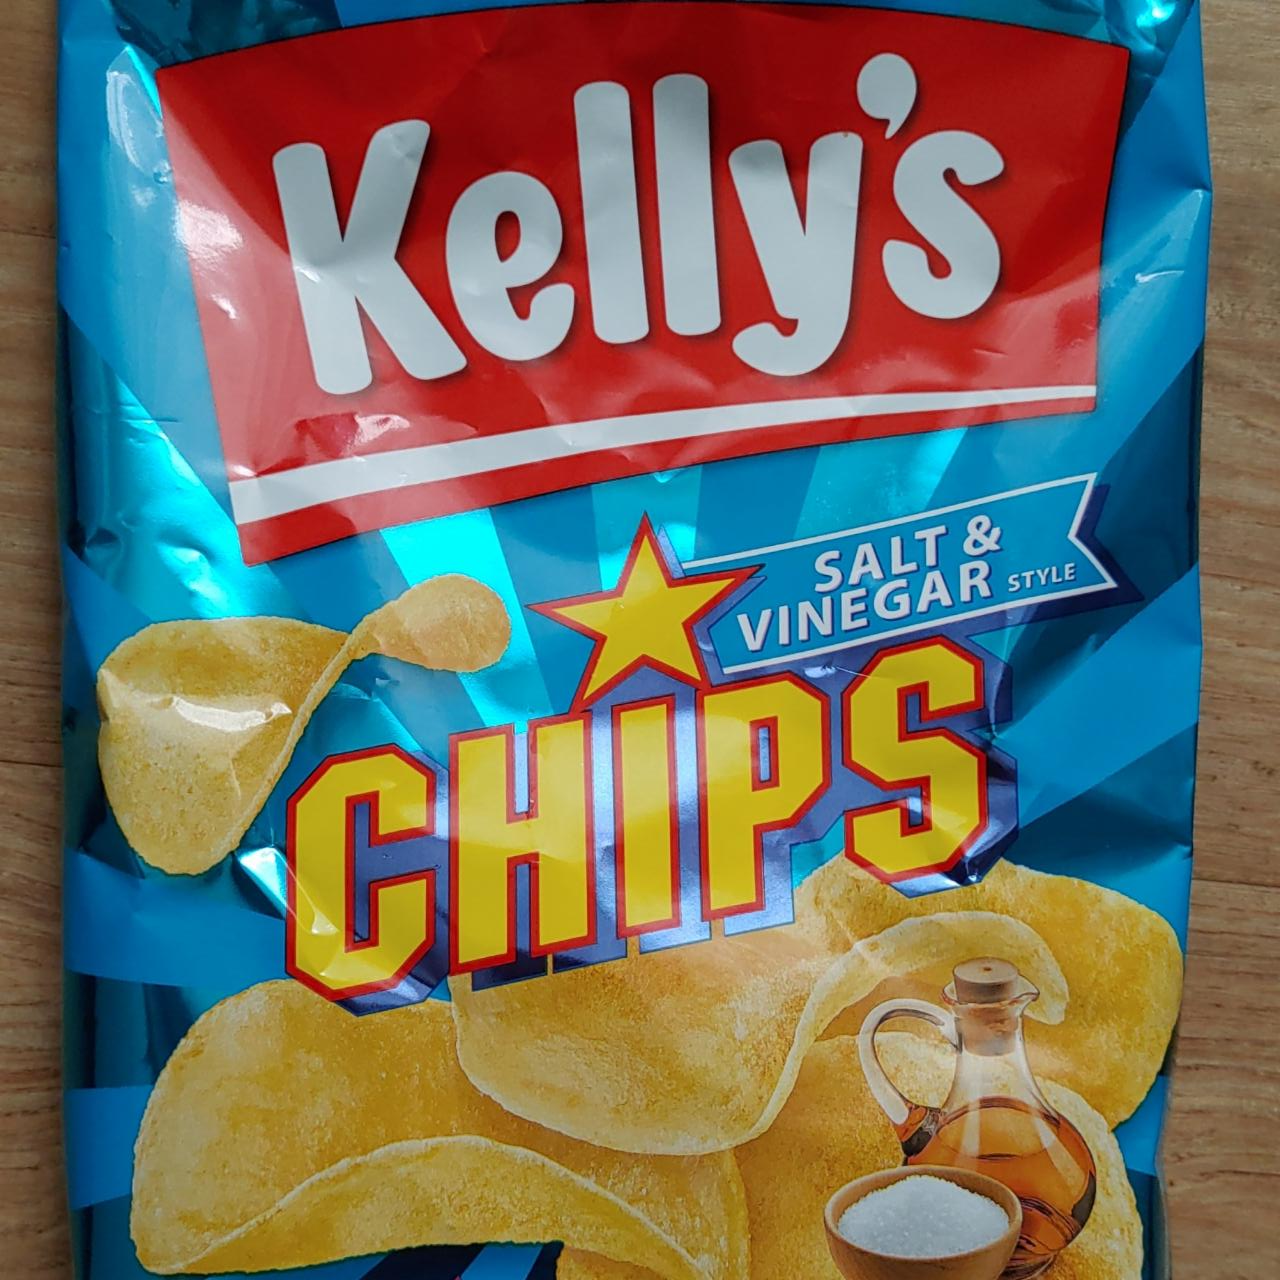 Fotografie - Chips Salt & Vinegar Kelly’s